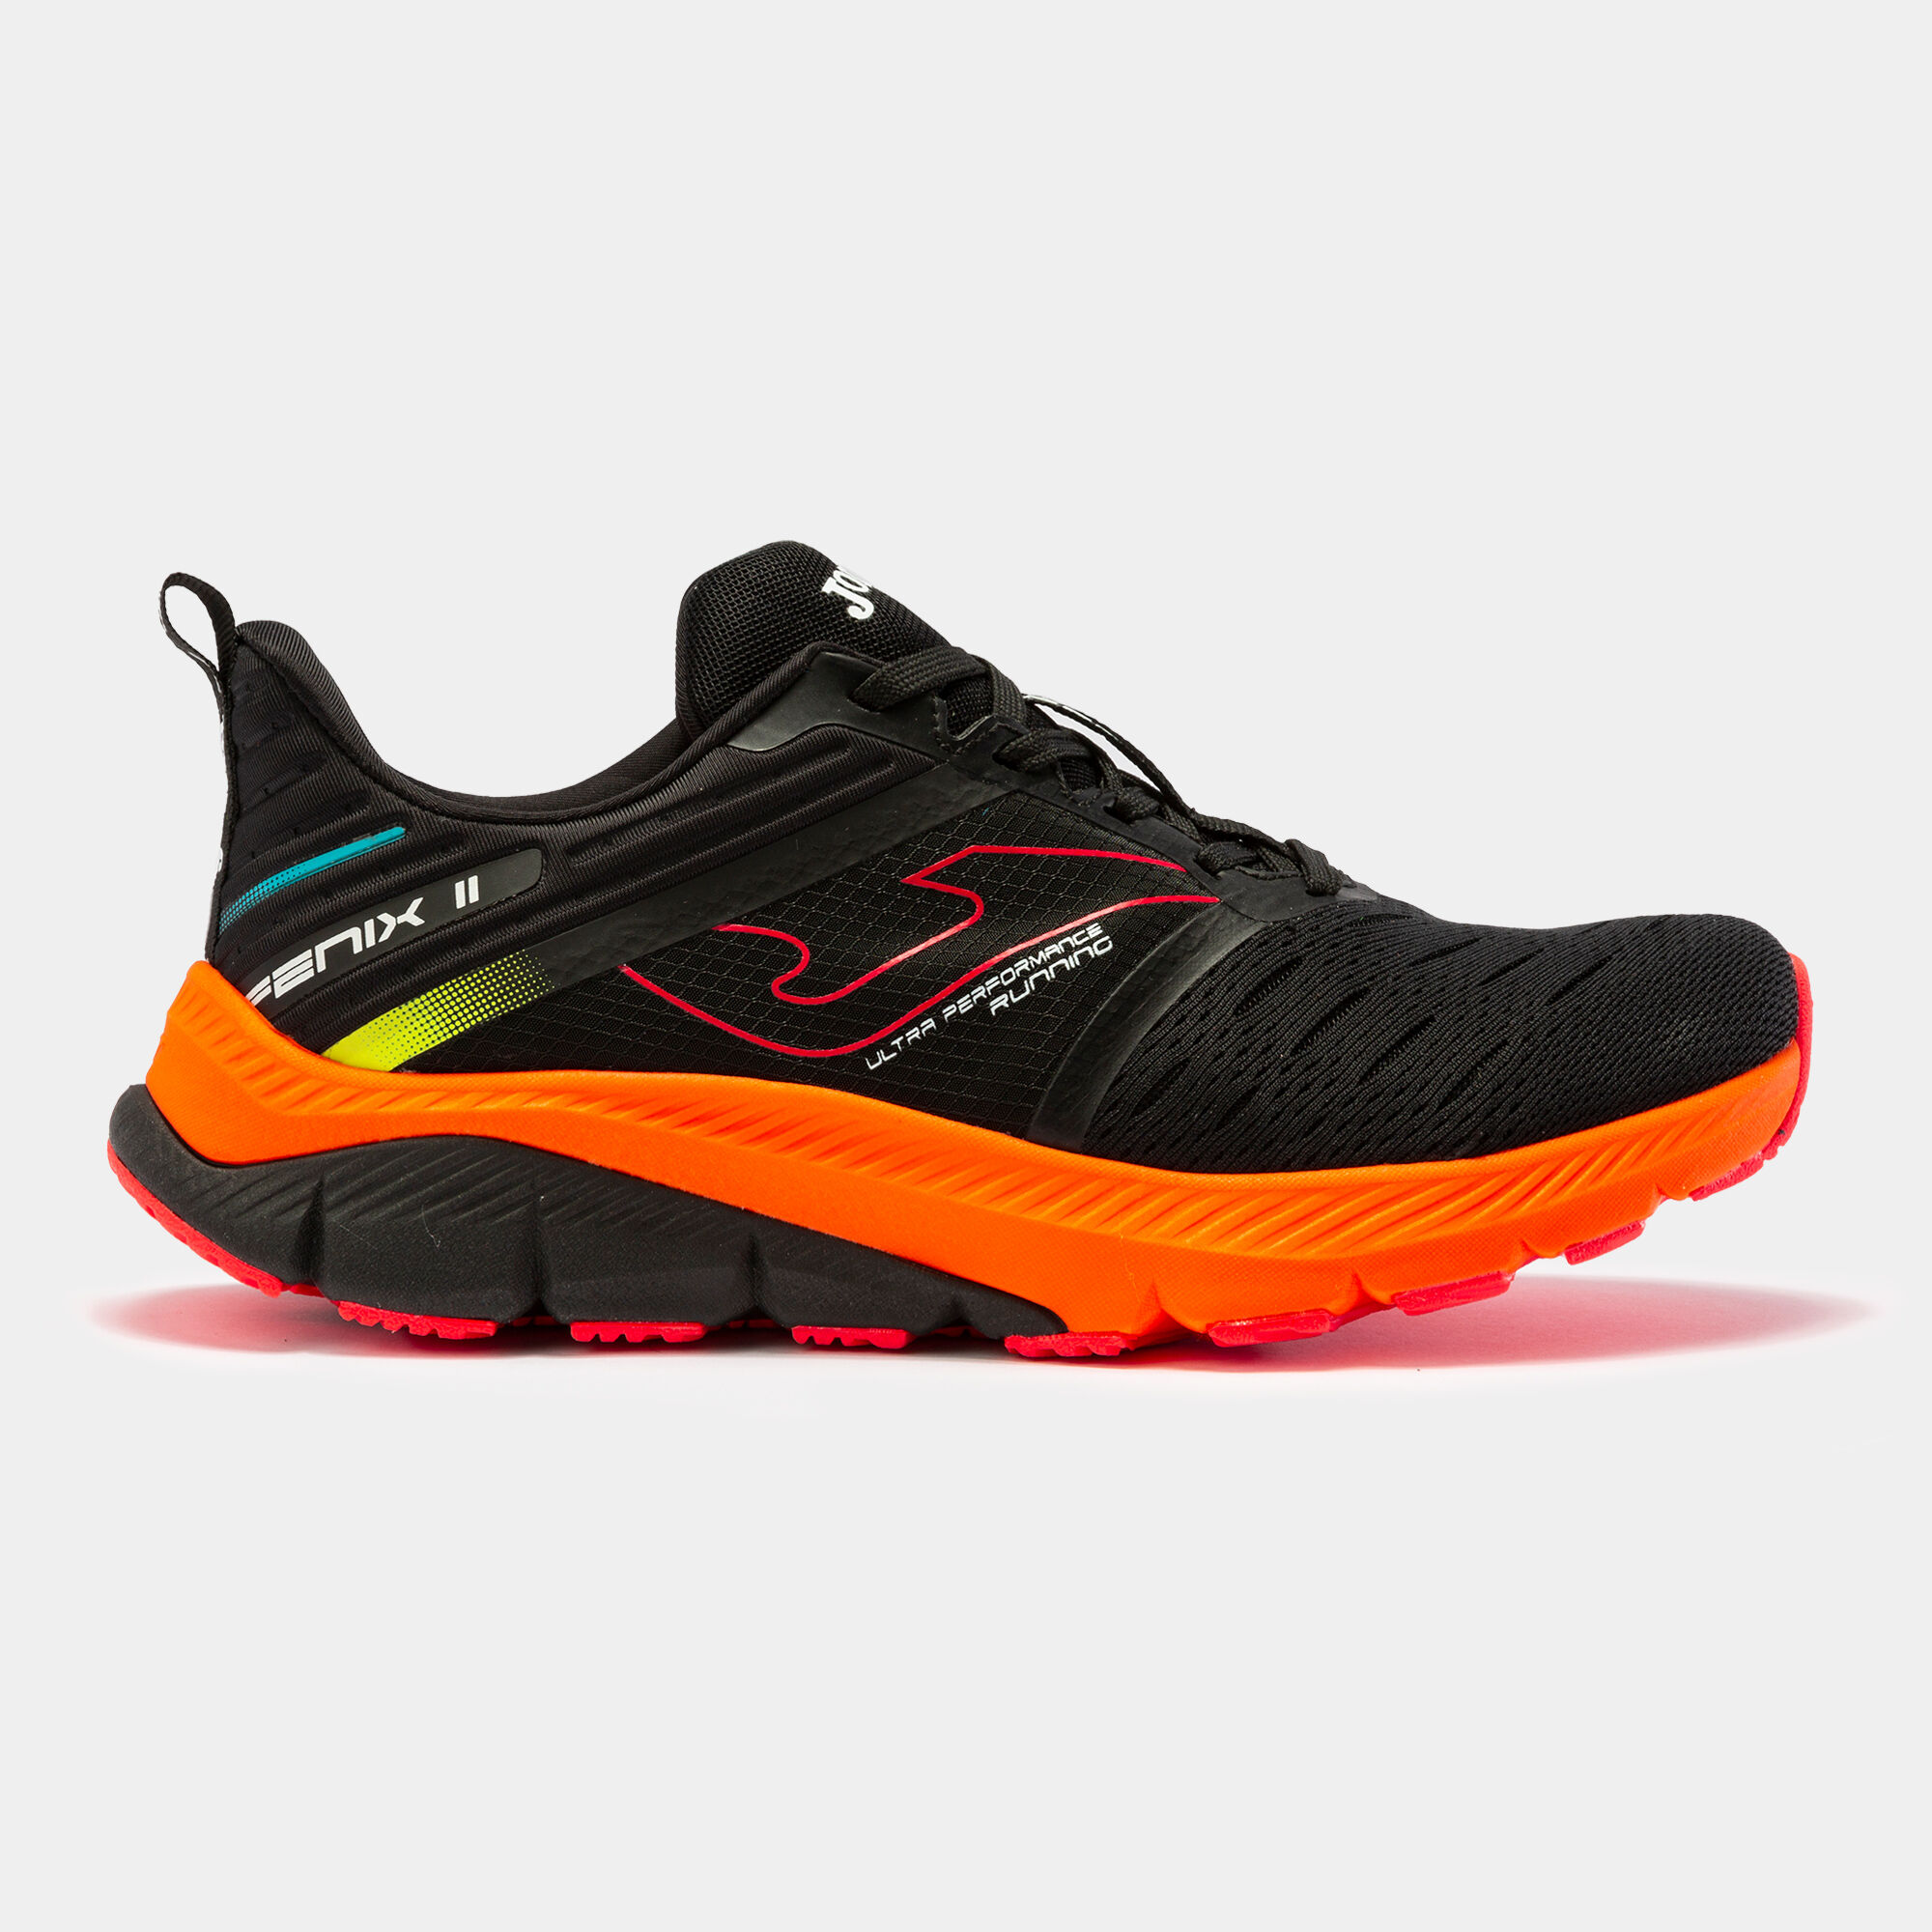 Chaussures running Fenix 22 homme noir orange fluo